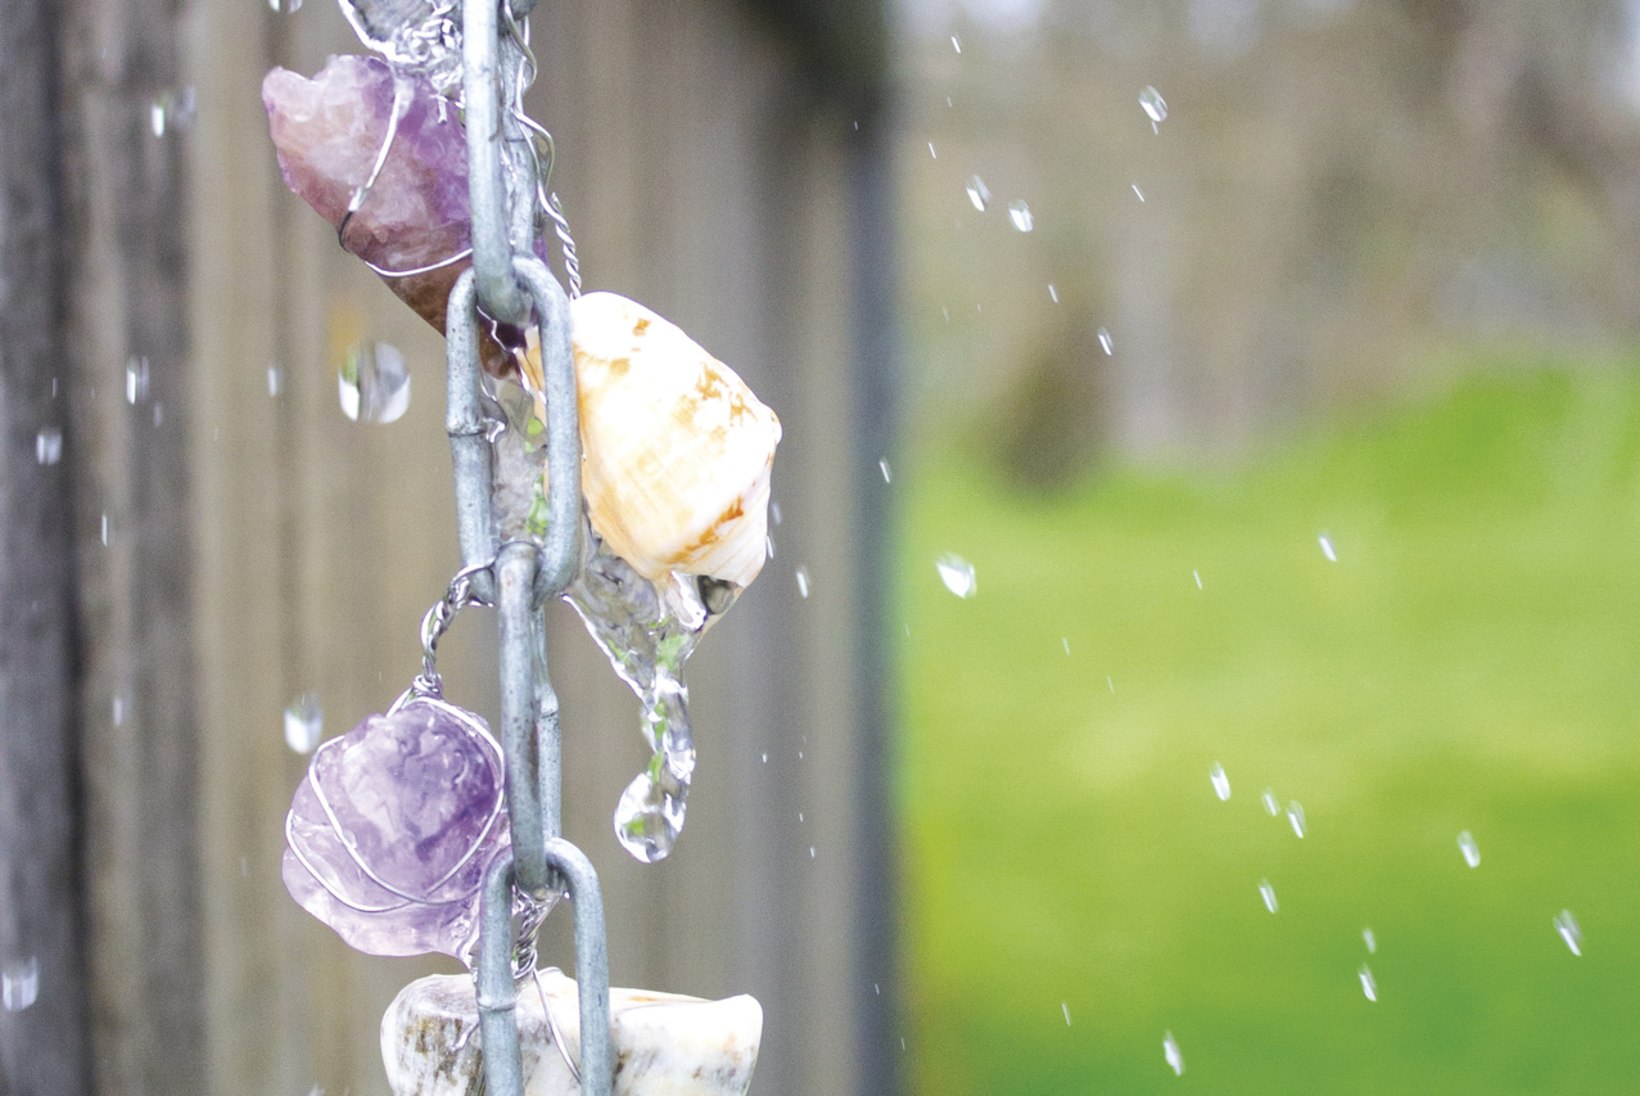 Püüa vihmavesi kinni ehk Kuidas meisterdada aeda vihmaketti?